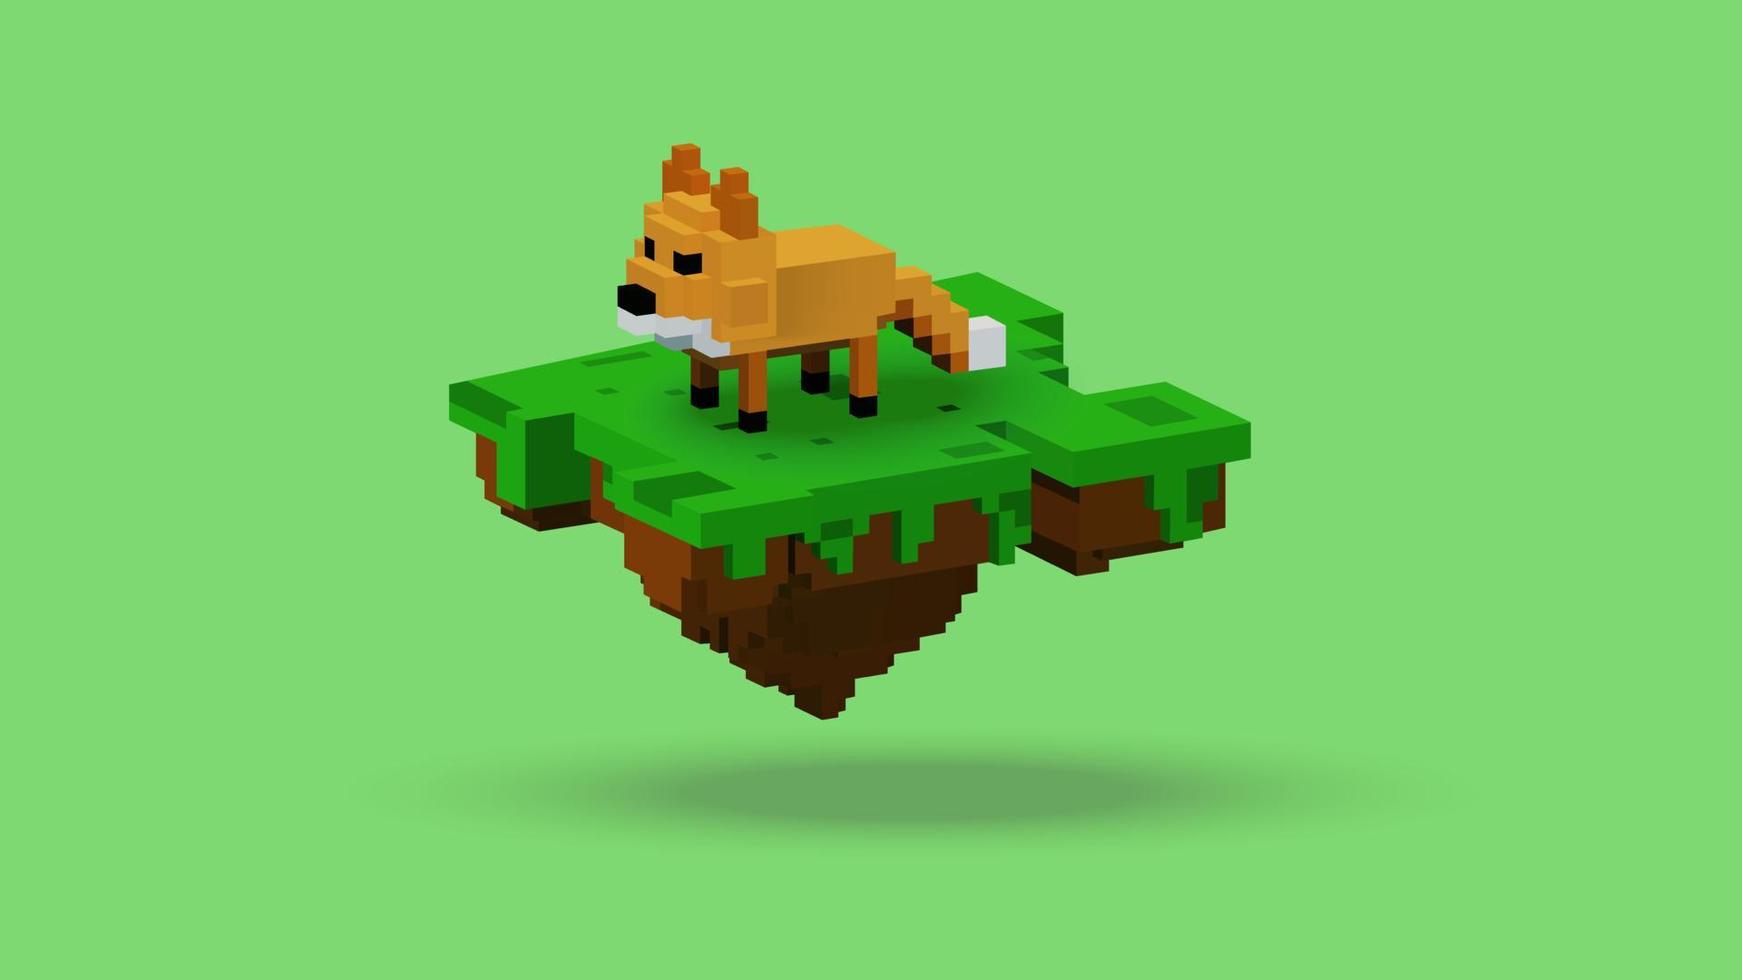 graphique vectoriel d'un animal de renard de rendu 3d sur une île flottante avec un style voxel. en utilisant des couleurs orange, marron, noir, vert et blanc. parfait pour les références de personnages de jeu